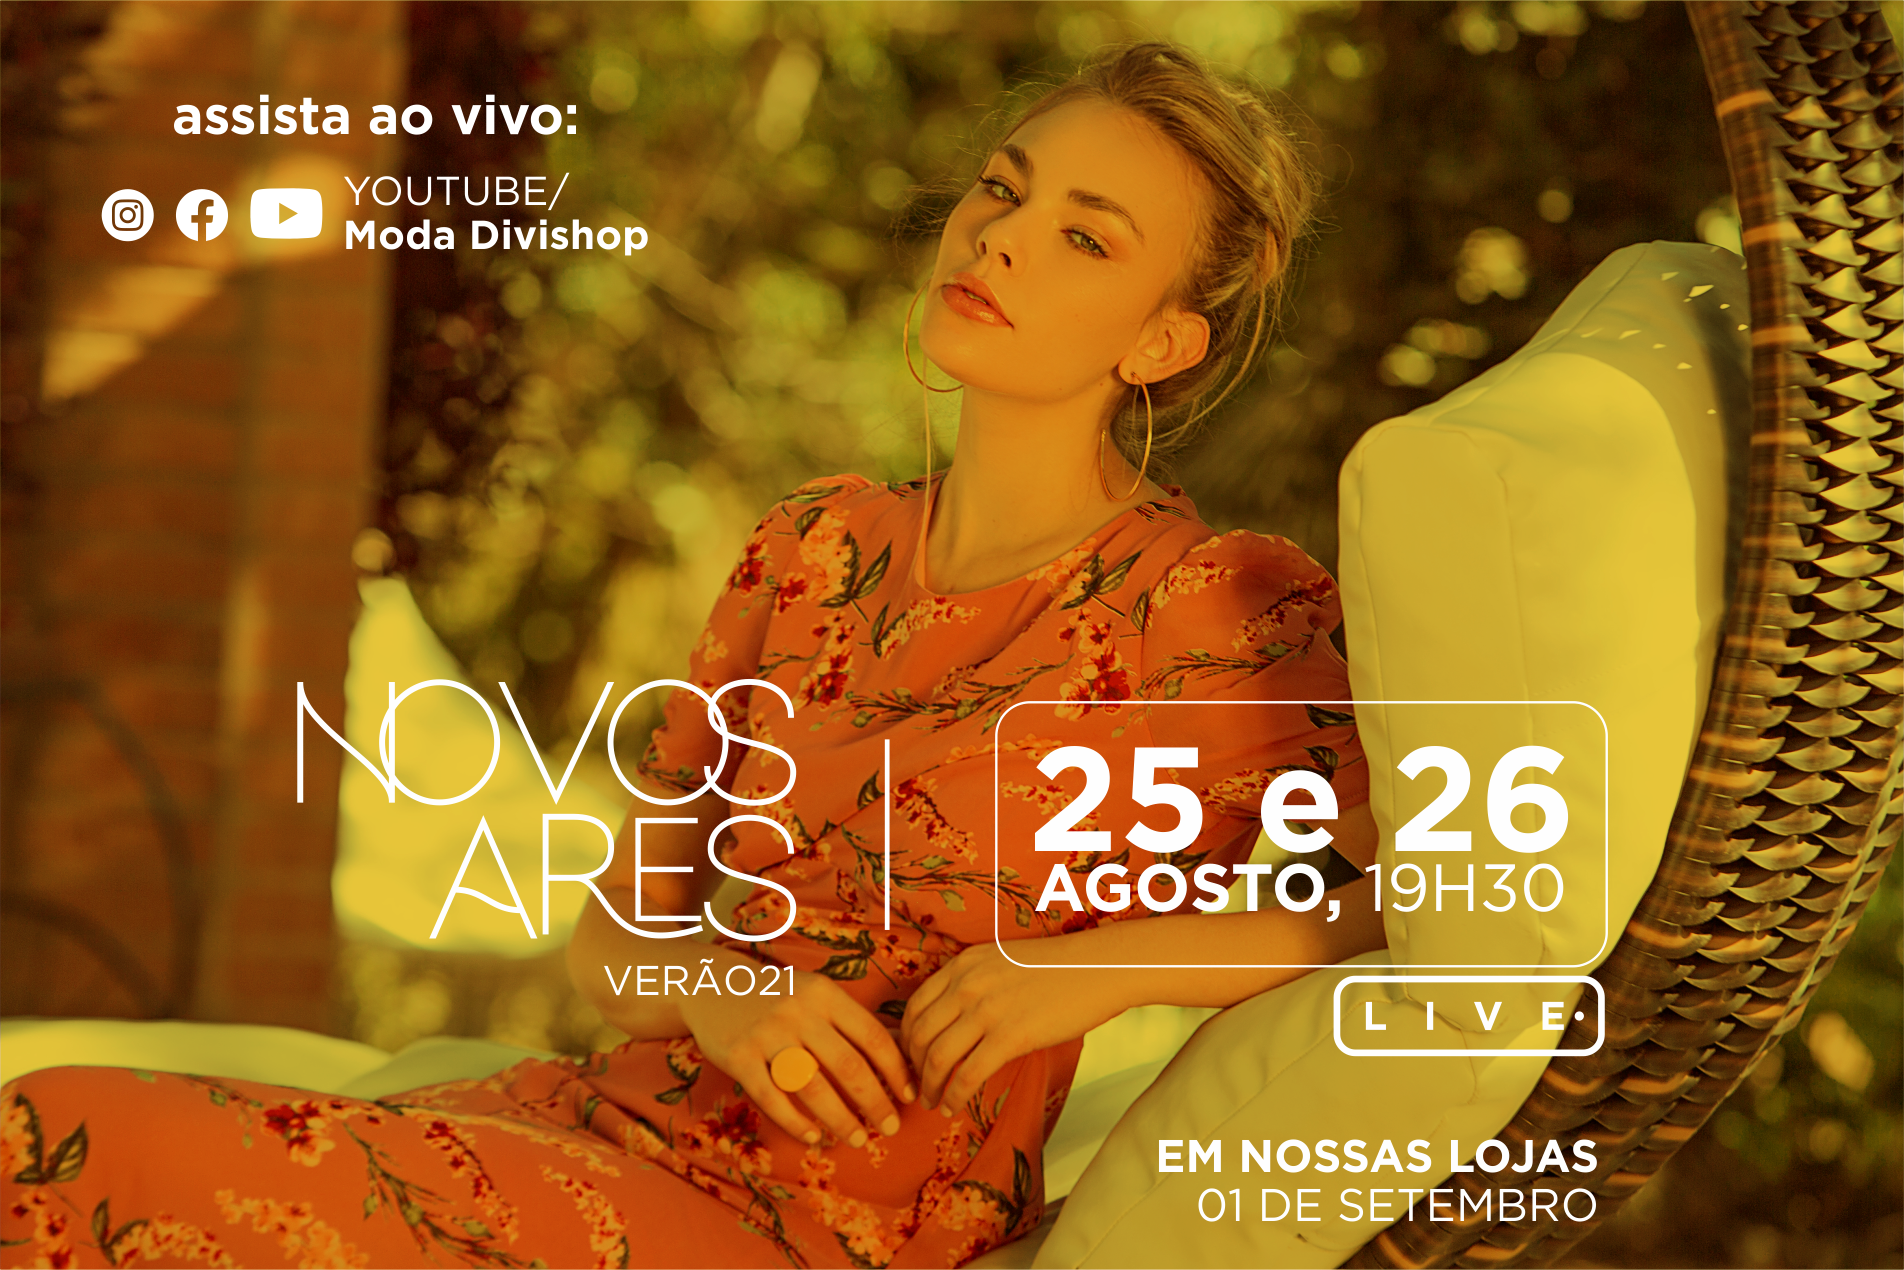 Novos Ares: Divishop realiza live para lançar a nova coleção Verão21 -  Divishop